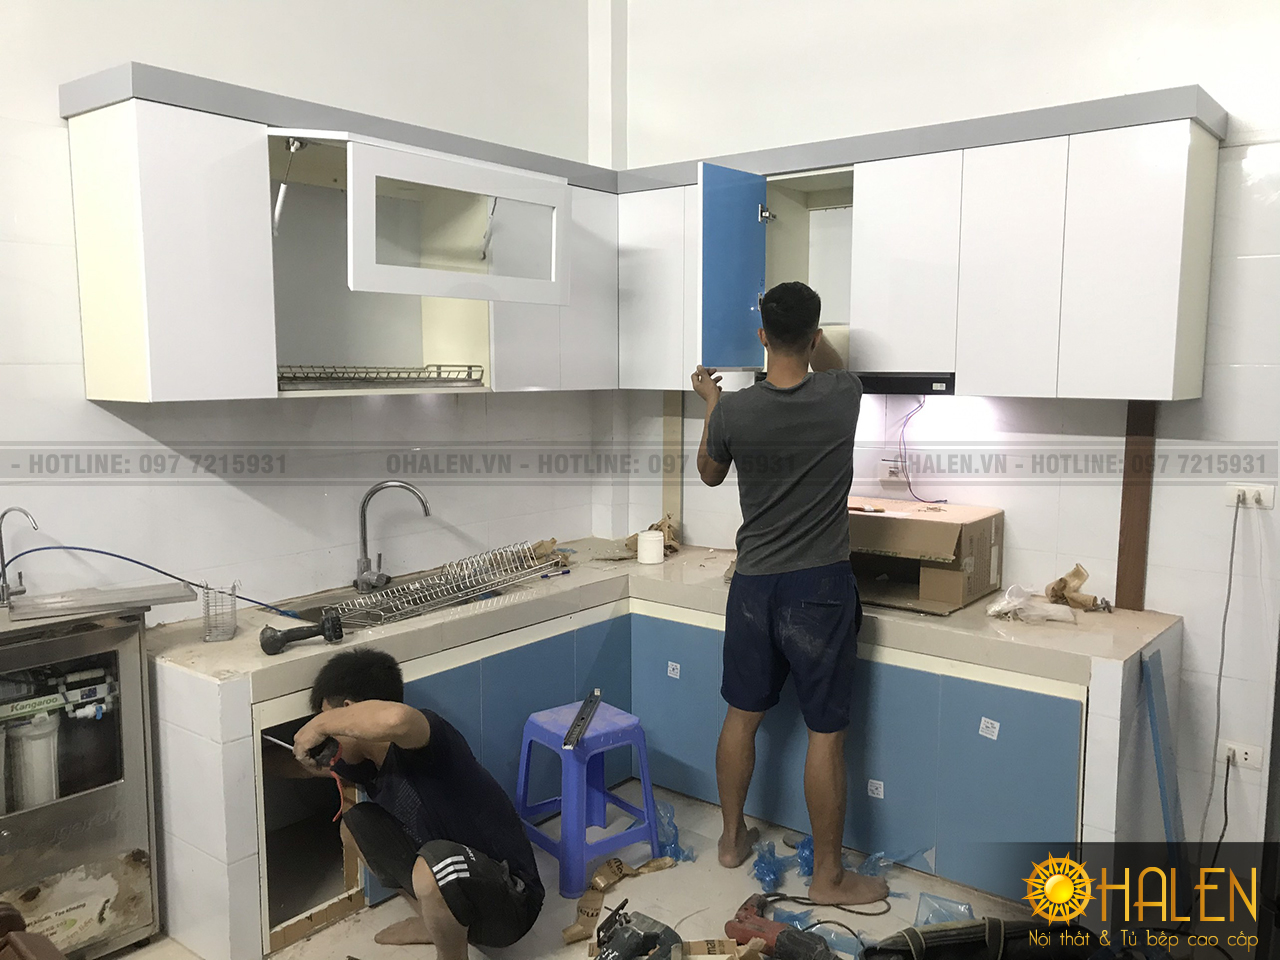 Đội ngũ thợ thi công tiến hành lắp đặt tủ bếp cho khách hàng